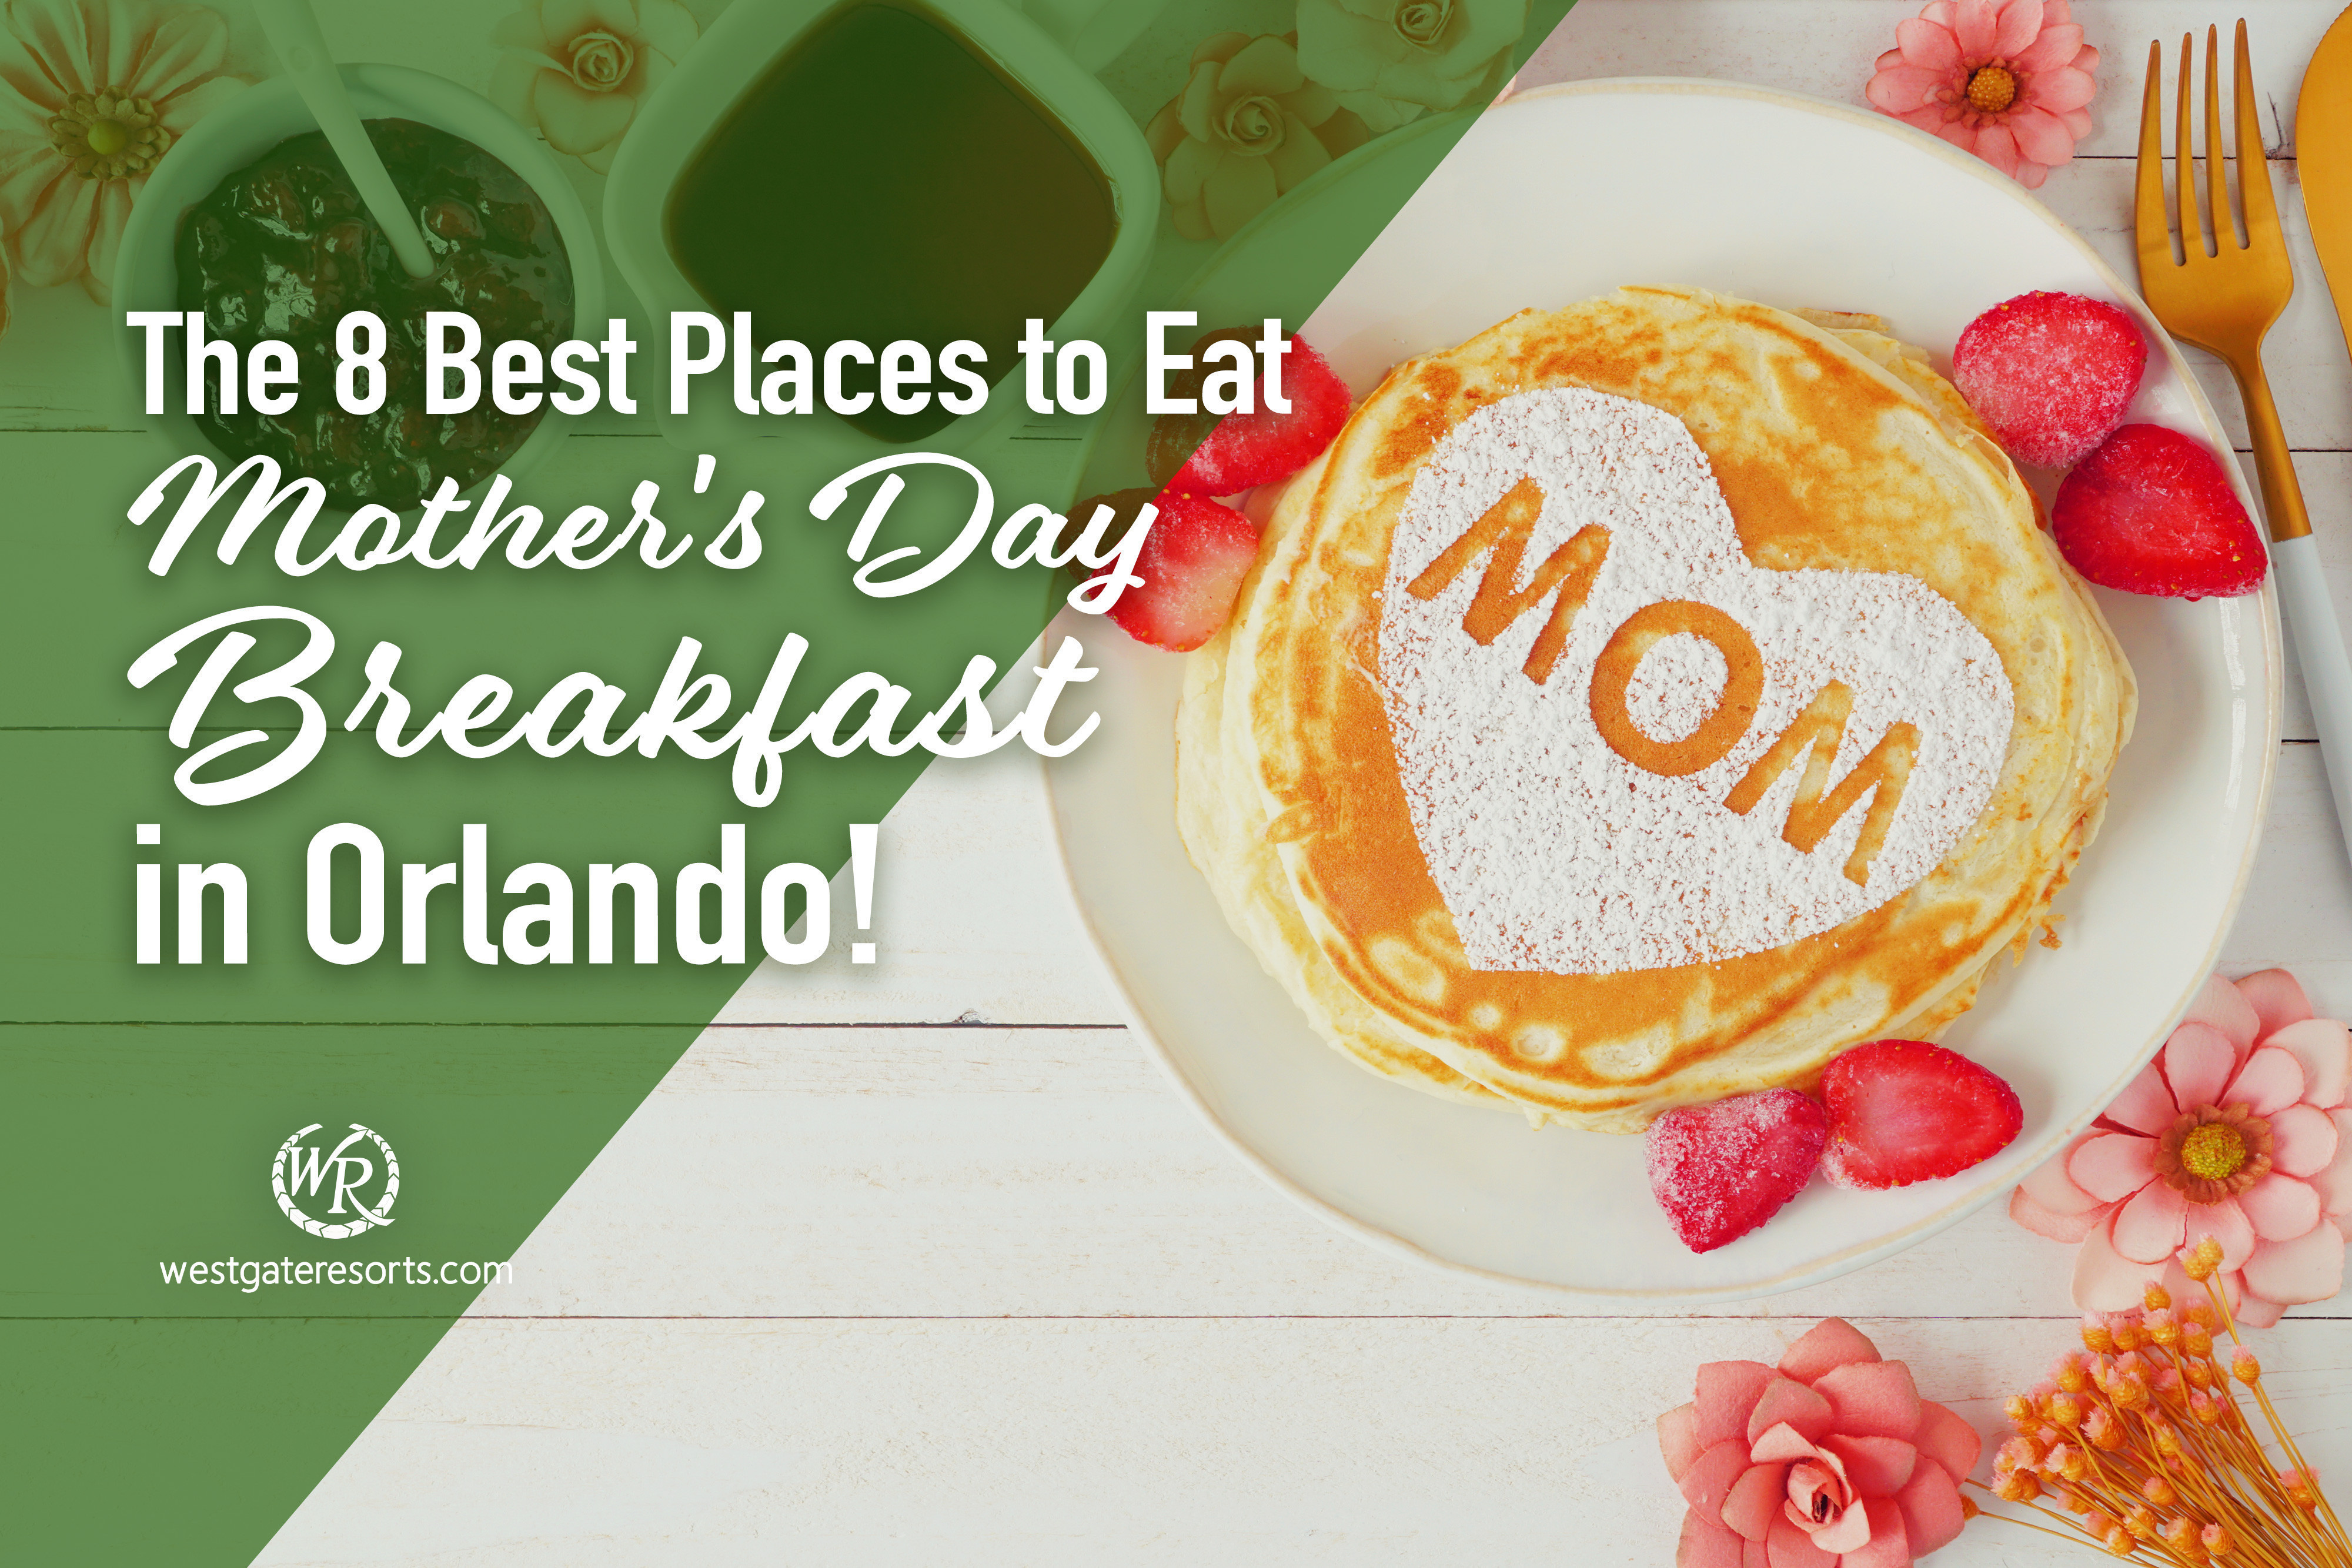 ¡Los 8 mejores lugares para desayunar el Día de la Madre en Orlando!